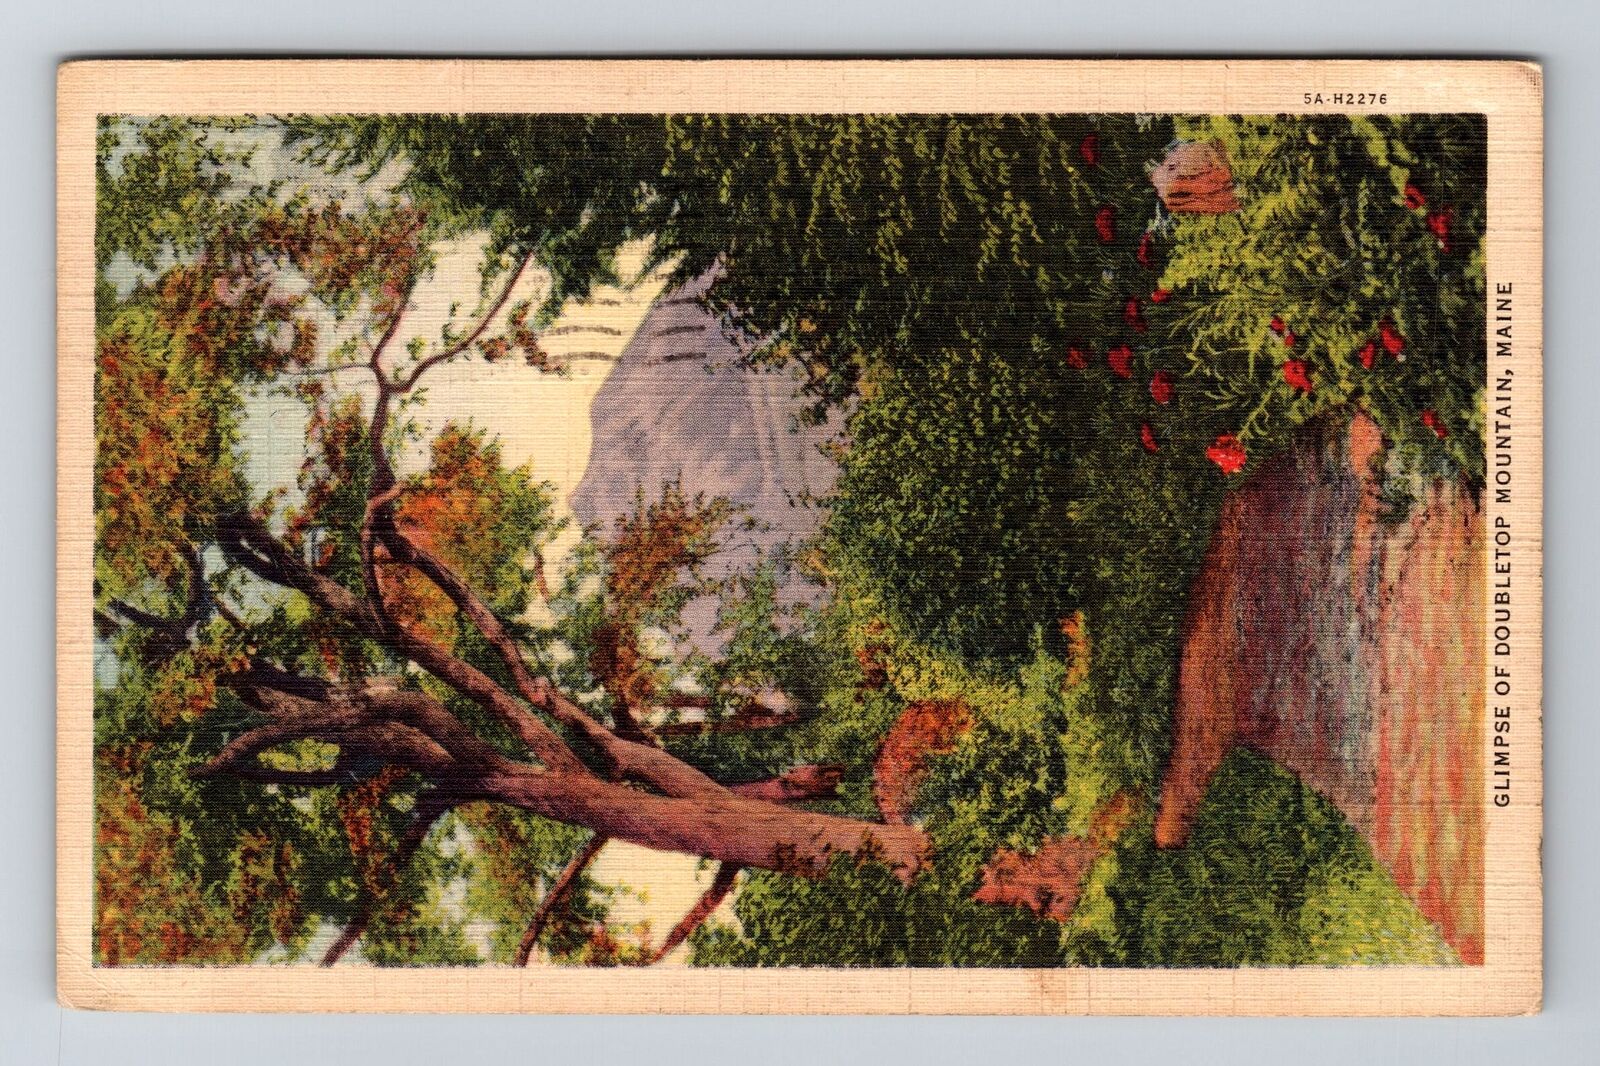 Baxter Park ME-Maine, Glimpse of Double top Mountain, c1937 Vintage Postcard